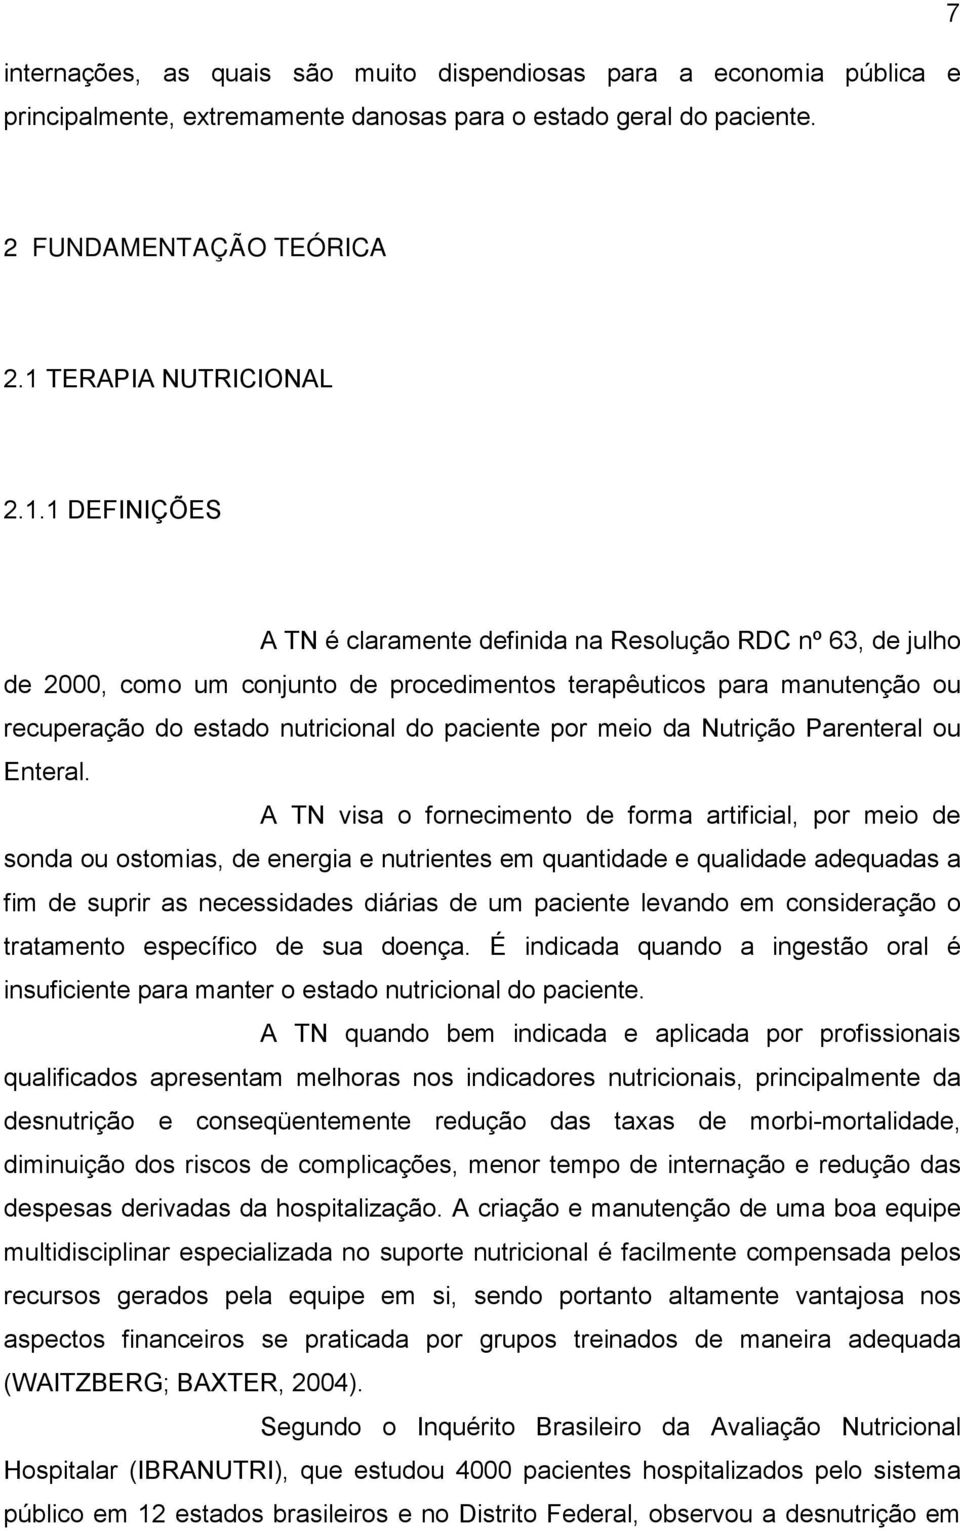 1 DEFINIÇÕES A TN é claramente definida na Resolução RDC nº 63, de julho de 2000, como um conjunto de procedimentos terapêuticos para manutenção ou recuperação do estado nutricional do paciente por